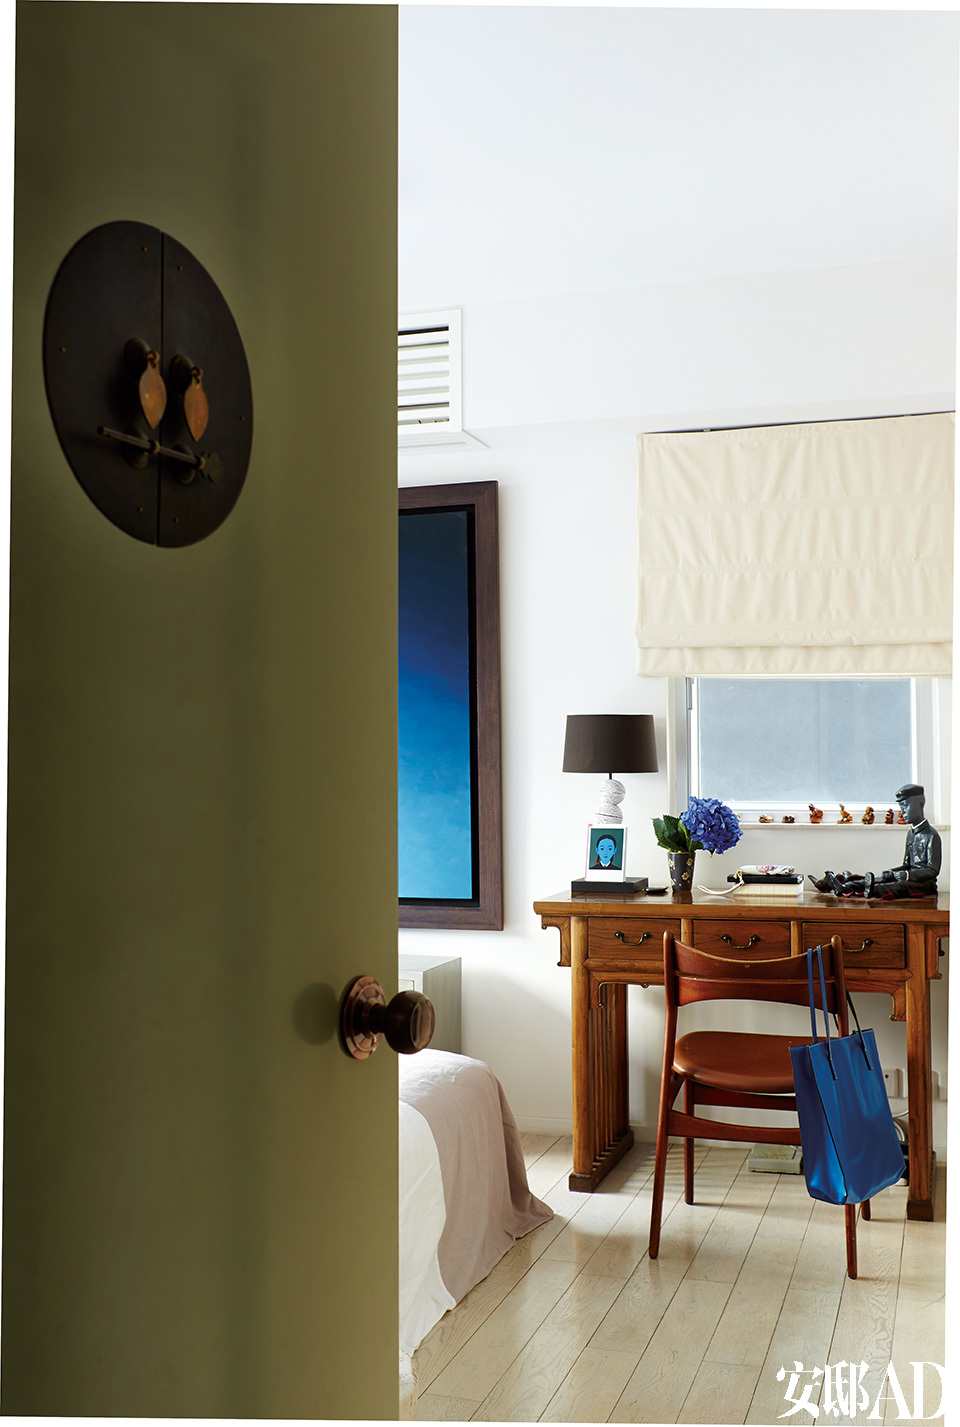 卧室的门被漆成了调皮的橄榄绿色，装饰性的传统中式门环是点睛之笔。中式古董桌身兼梳妆台和展示柜的双重作用，也是有效利用空间的又一范例。“ 真正的奢华是能有家的感觉，住在能满足你需要的地方。”